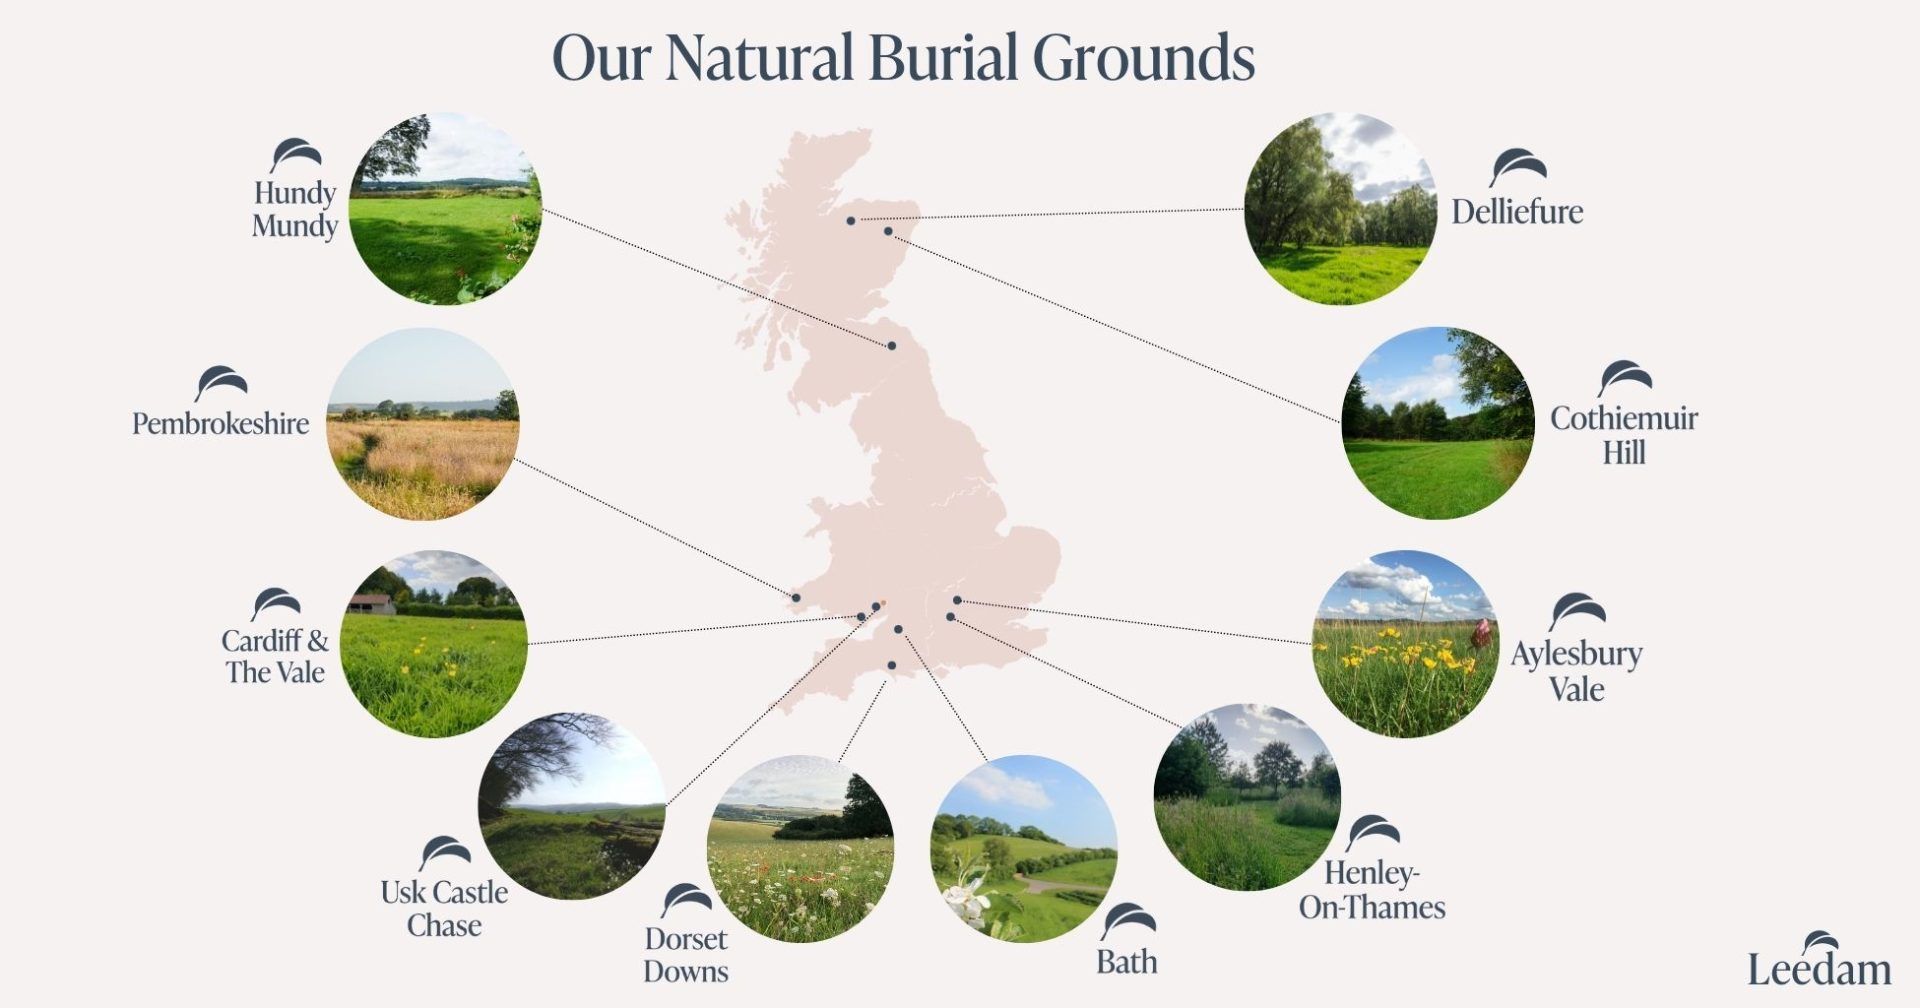 Leedam natural burial grounds across the uk